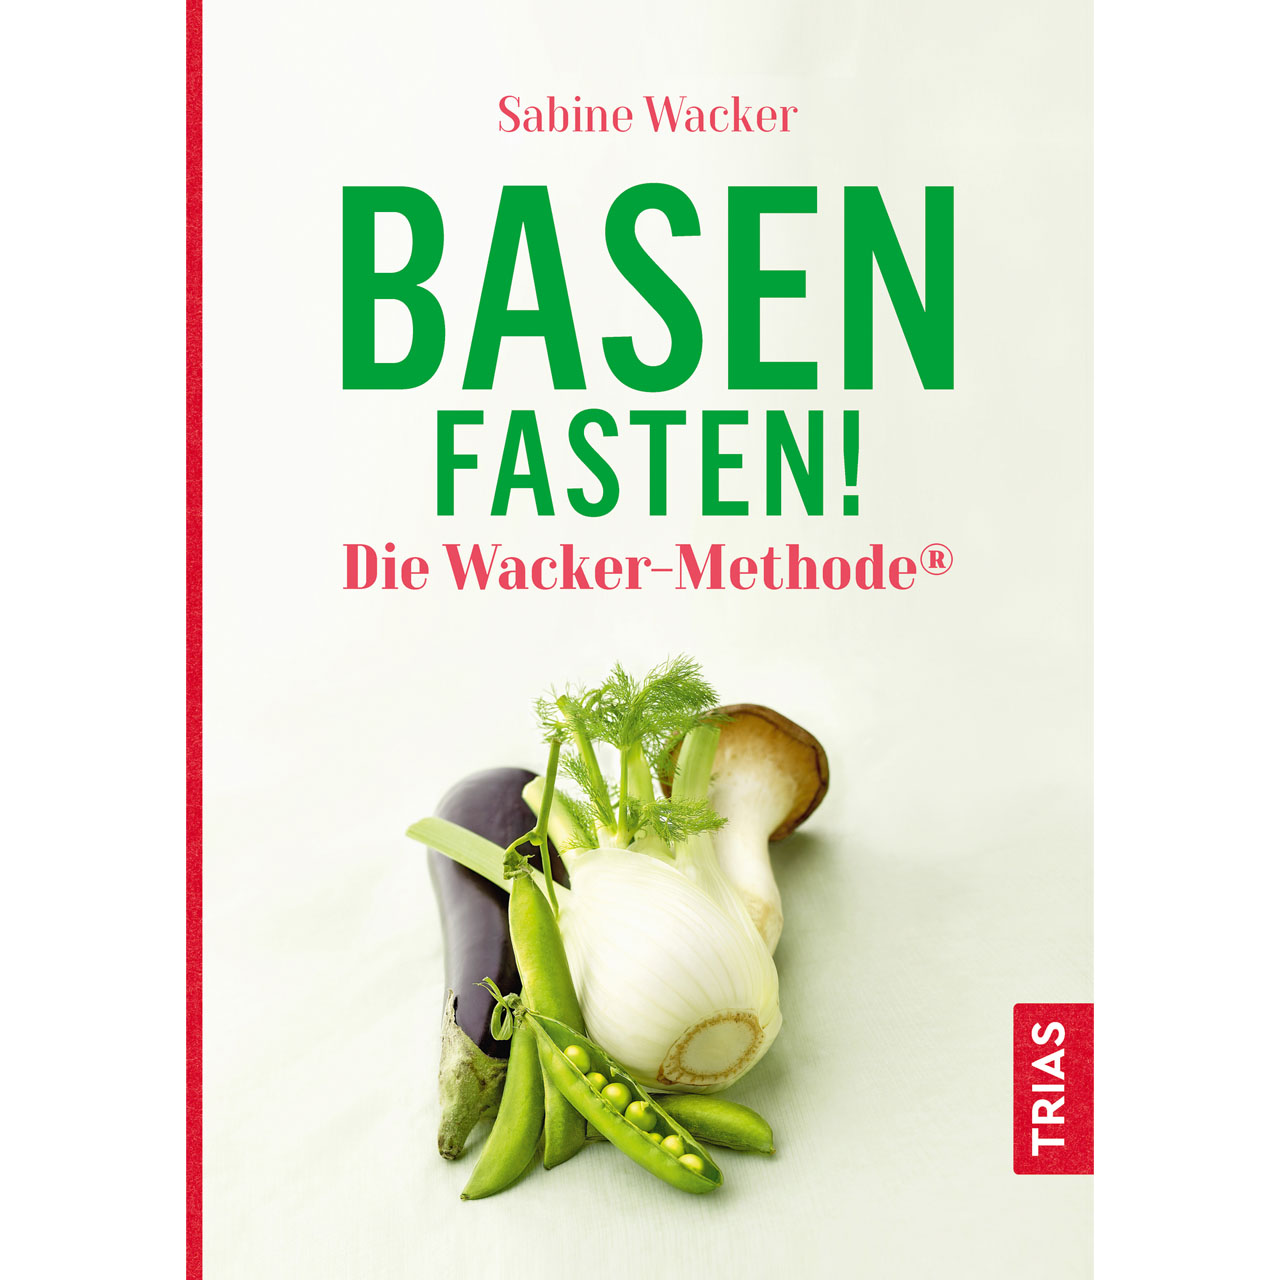 basenfasten - die wacker-methode, TRIAS-Verlag